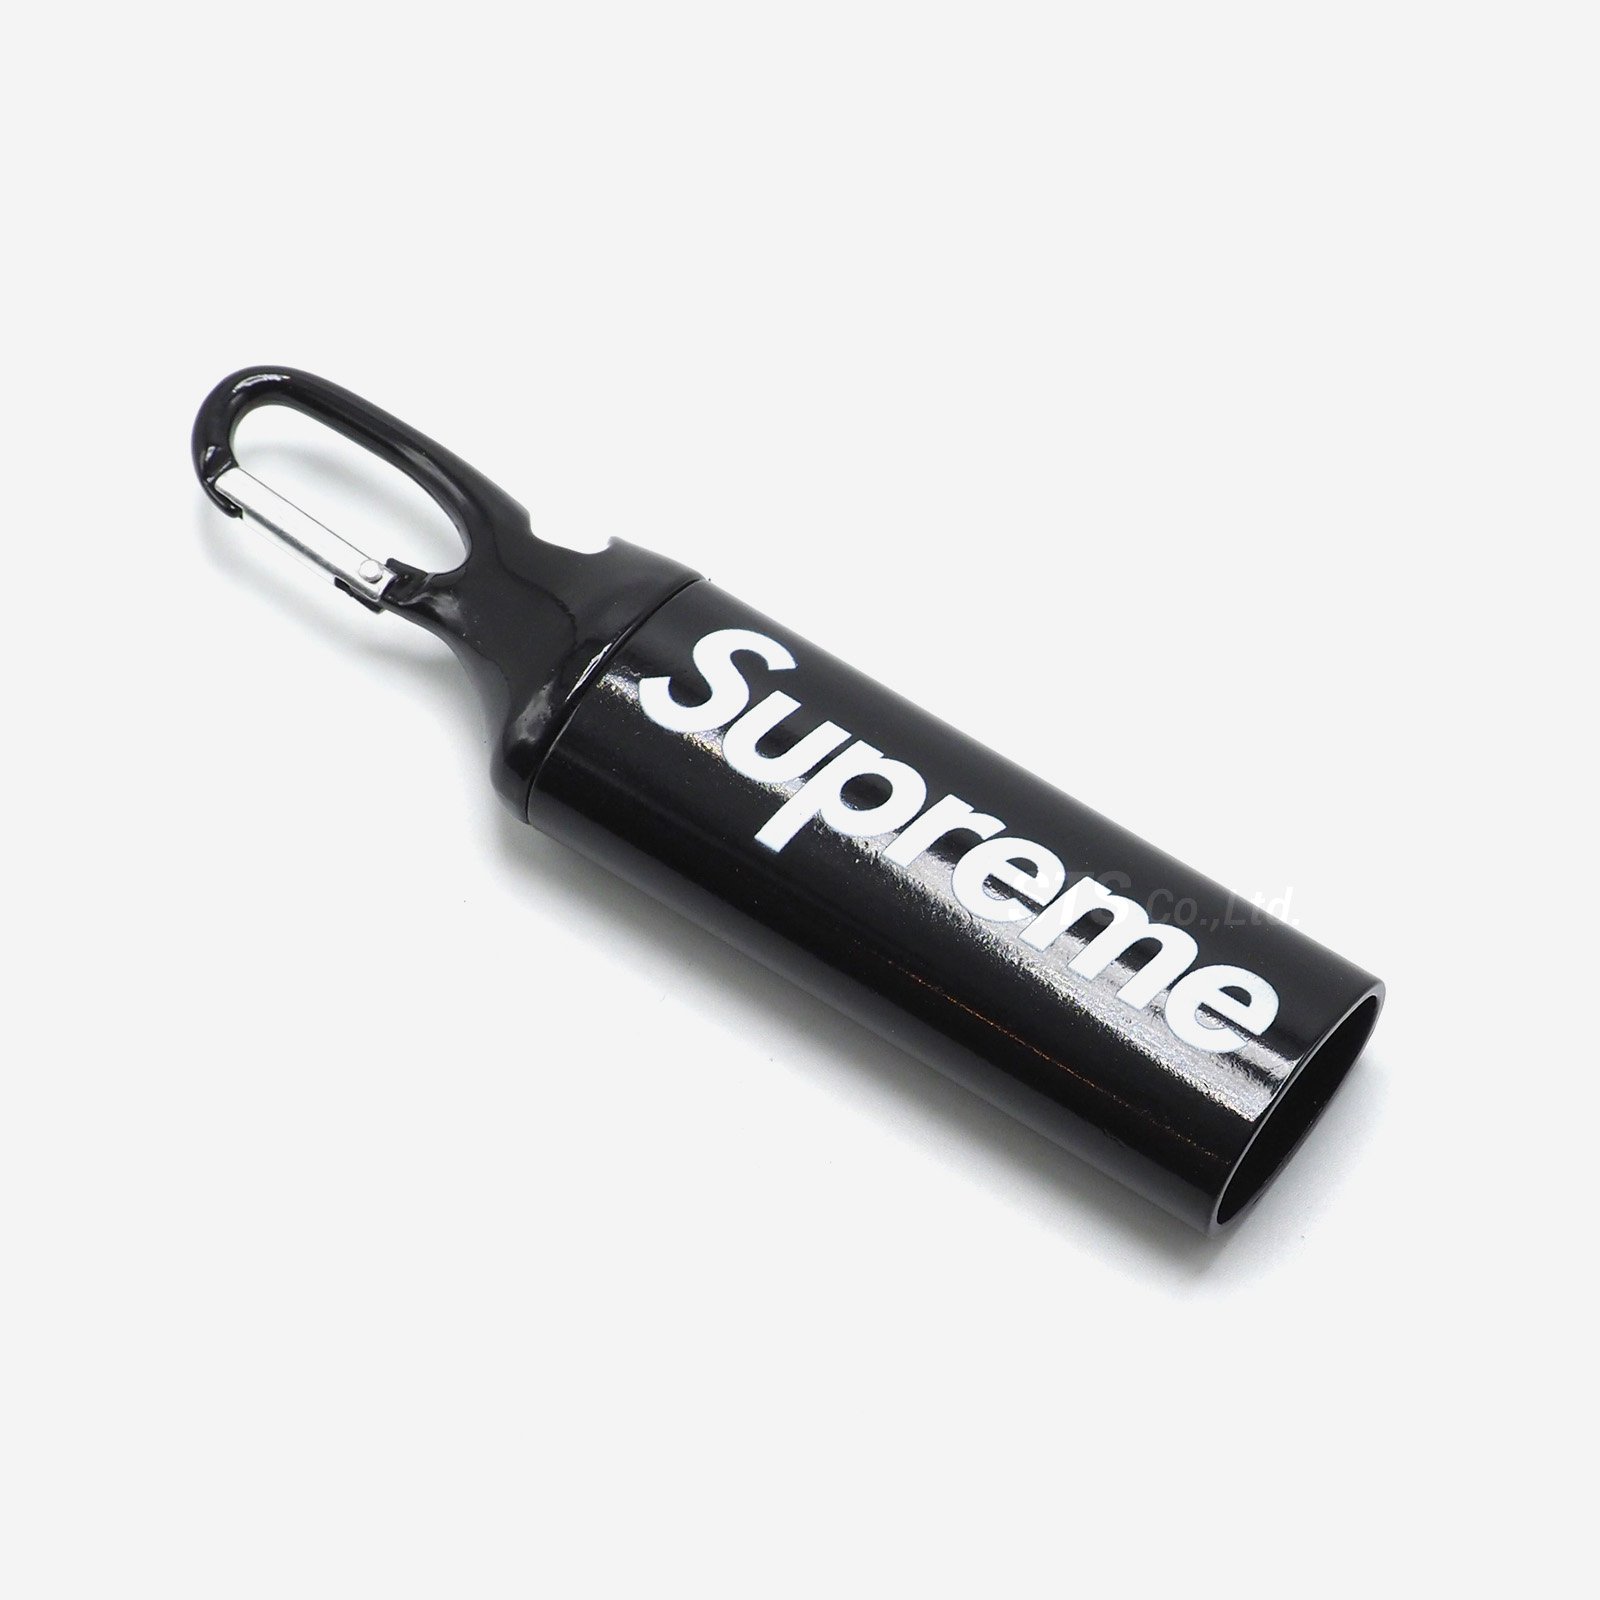 Supreme - Lighter Case Carabiner - UG.SHAFT